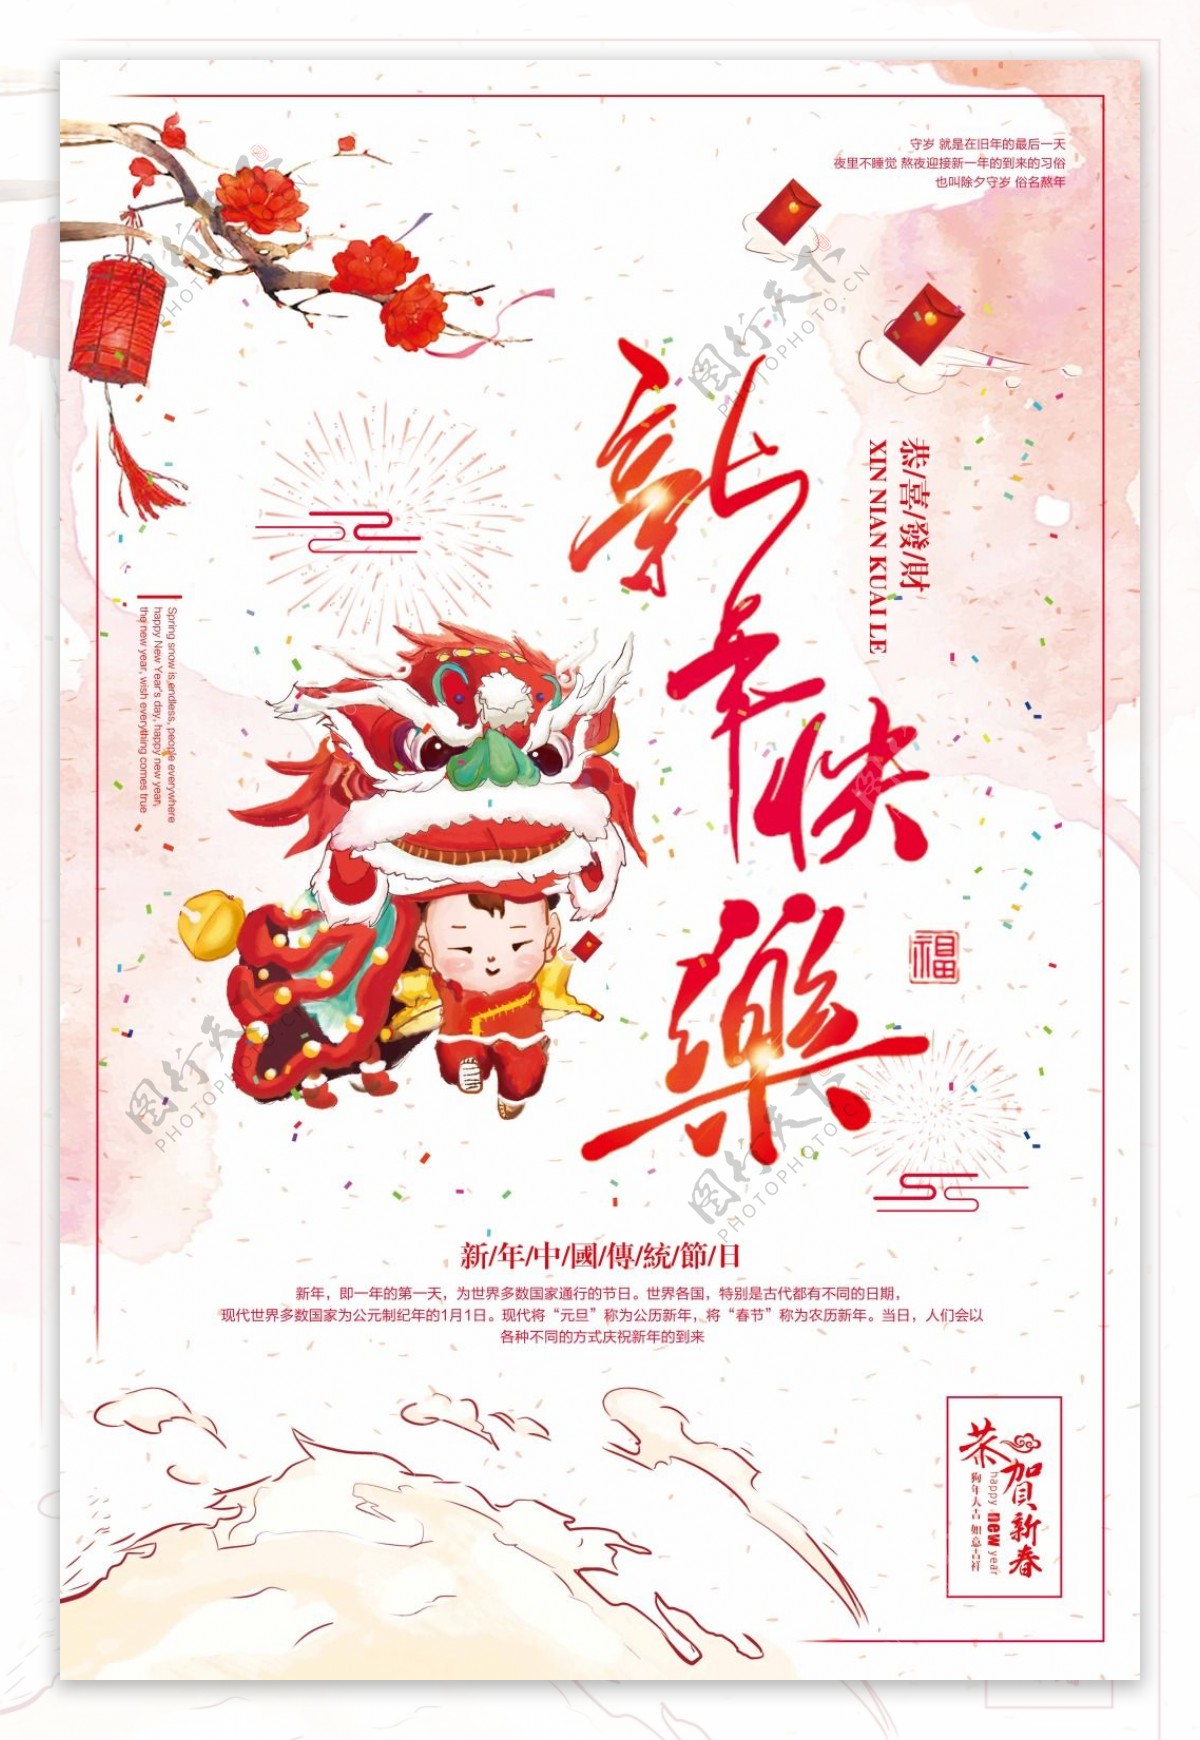 2018年新年快乐简约节日海报